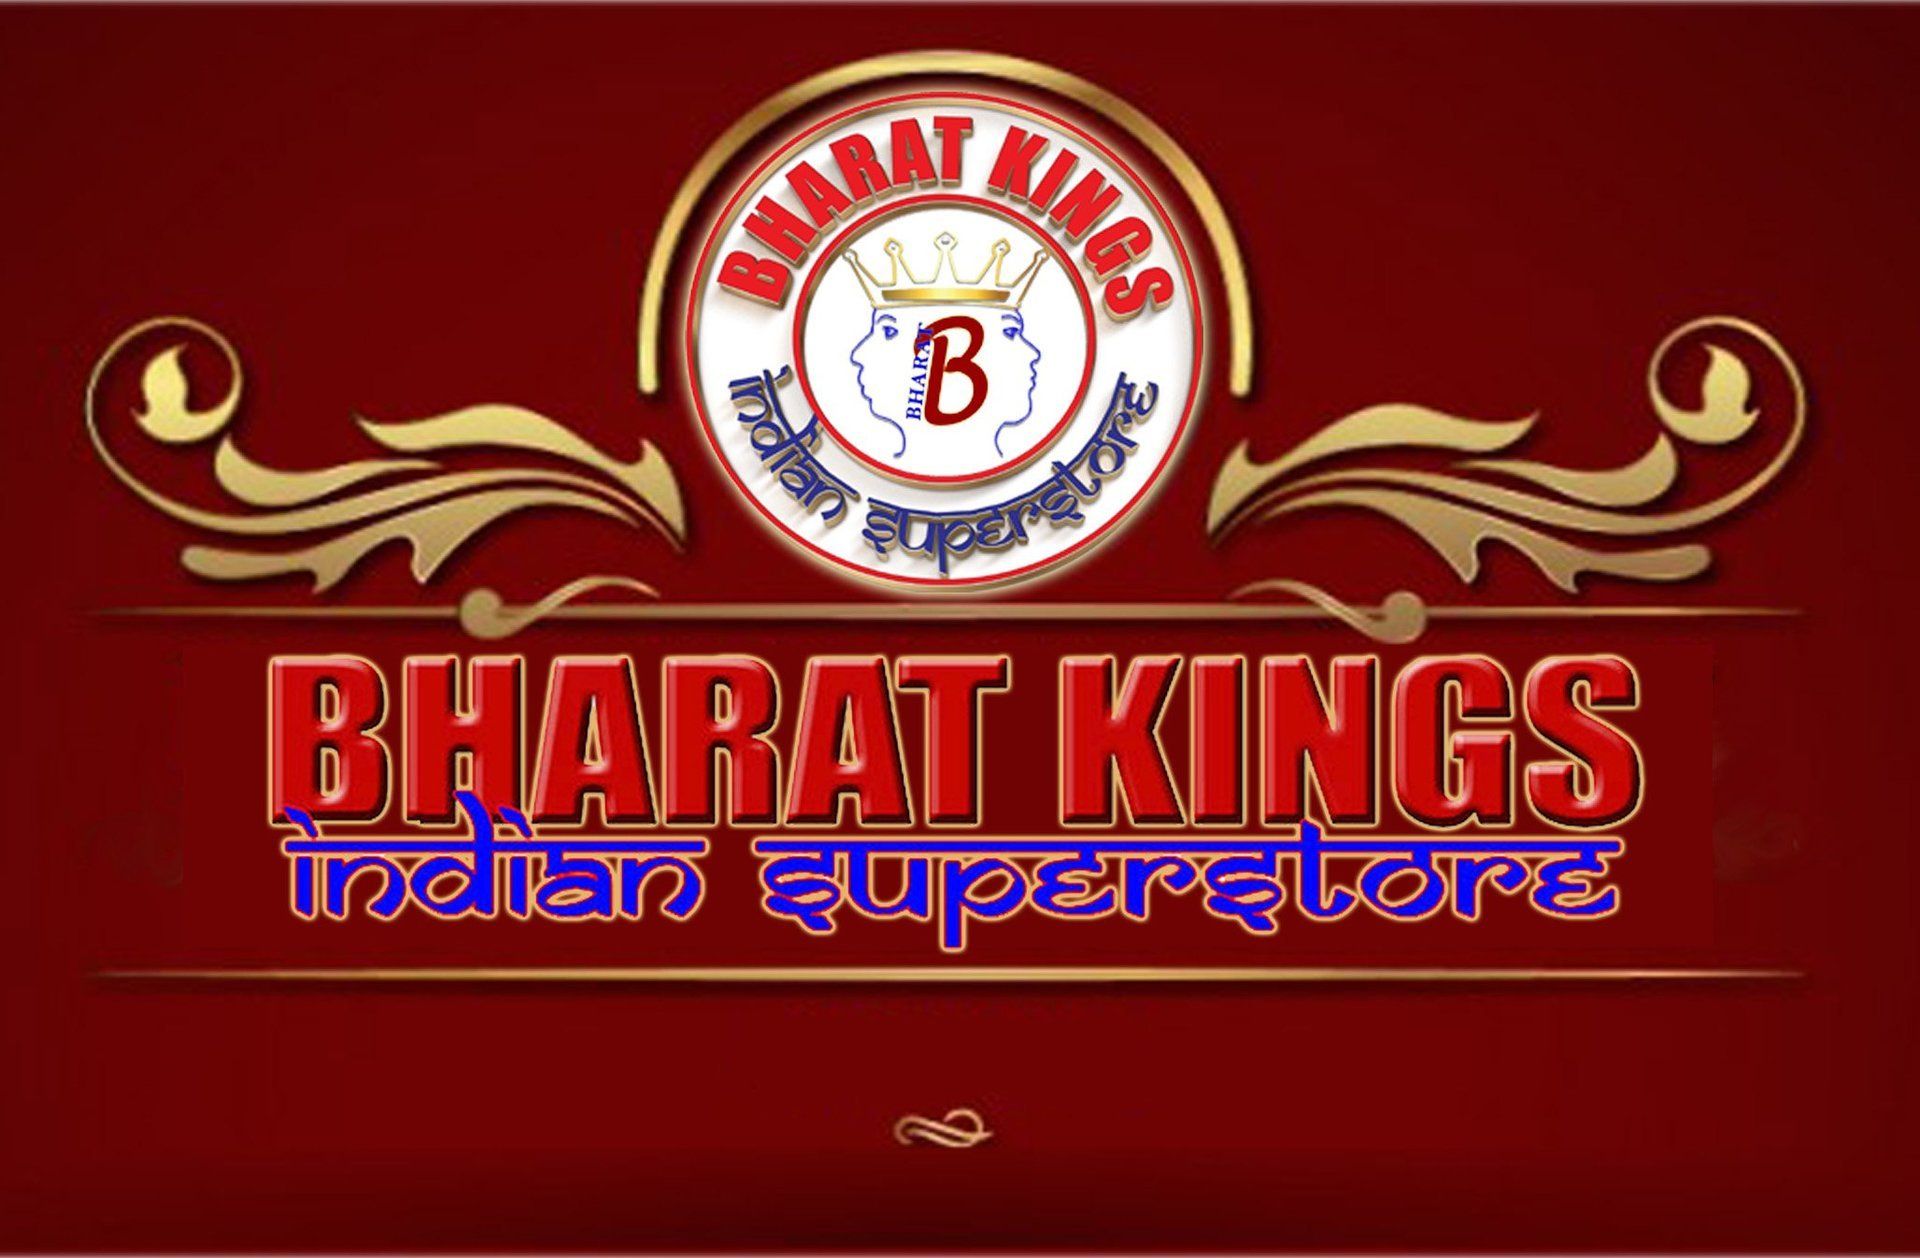 Een logo voor de Indiase superstore van bharat kings op een rode achtergrond